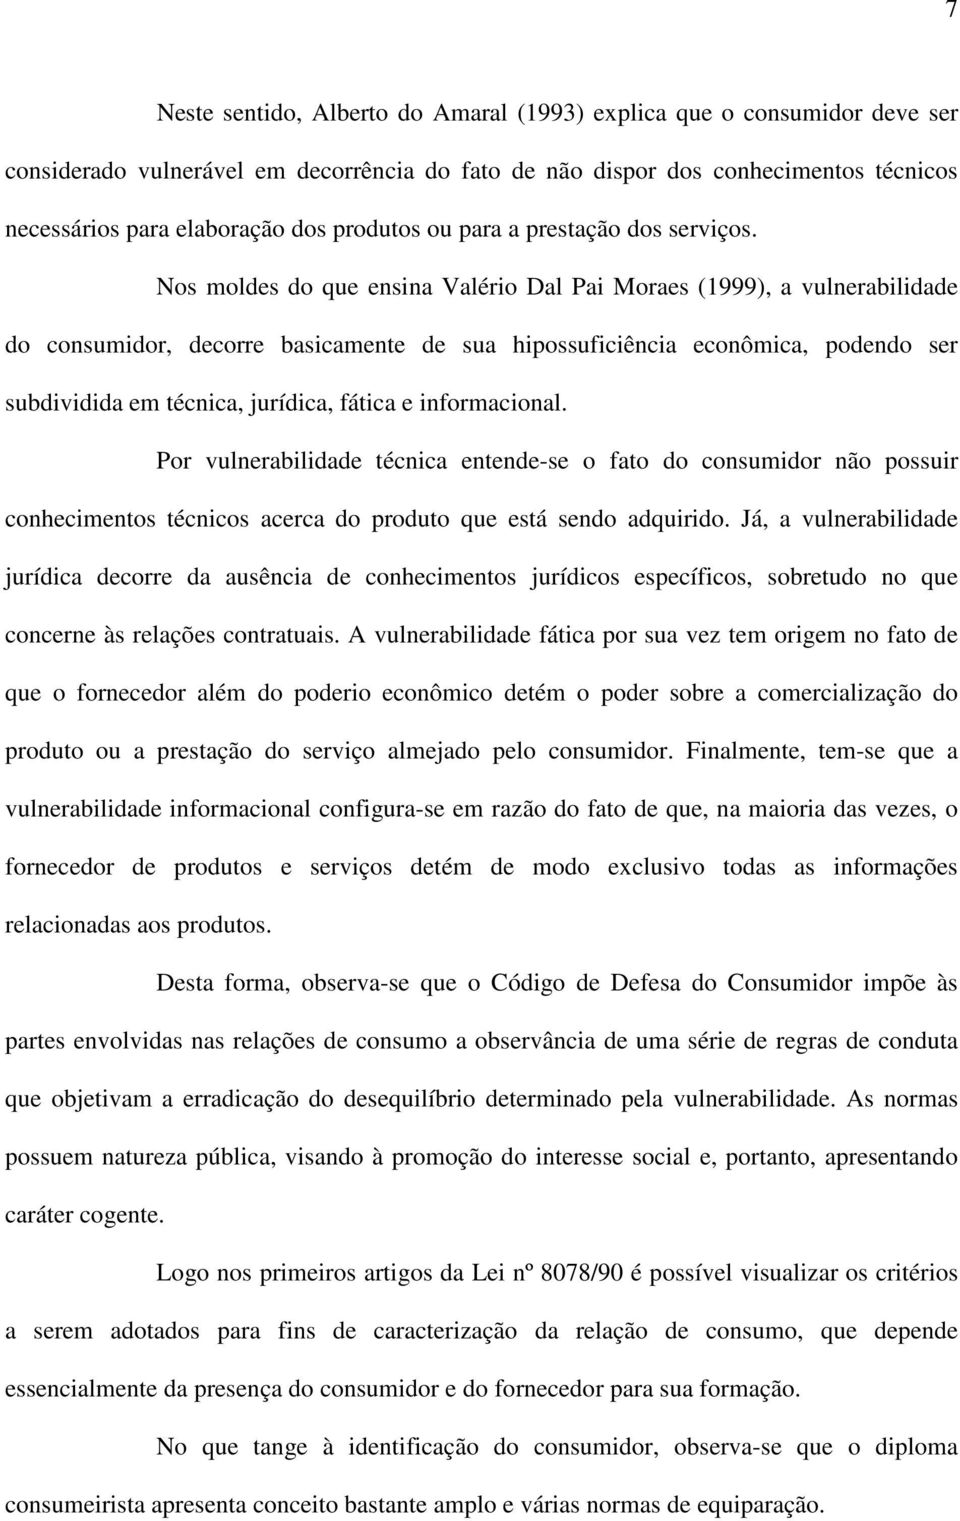 Nos moldes do que ensina Valério Dal Pai Moraes (1999), a vulnerabilidade do consumidor, decorre basicamente de sua hipossuficiência econômica, podendo ser subdividida em técnica, jurídica, fática e